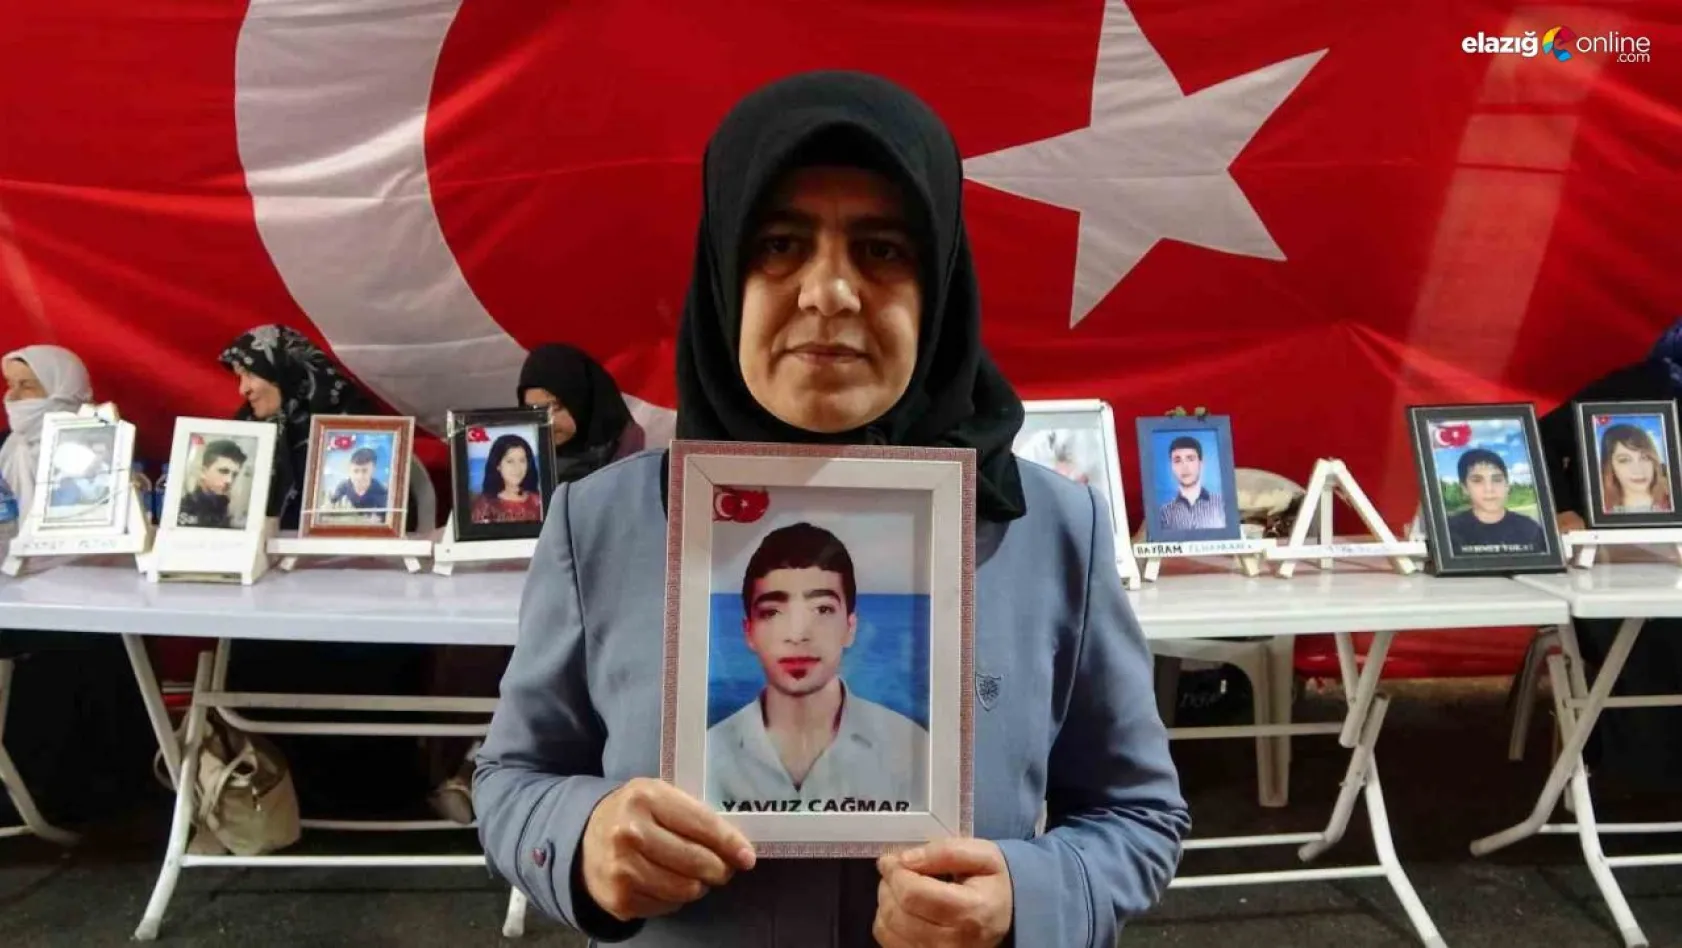 Diyarbakır annelerinden Çağmar: 'Evlat hasretiyle HDP önünde bekliyorum'